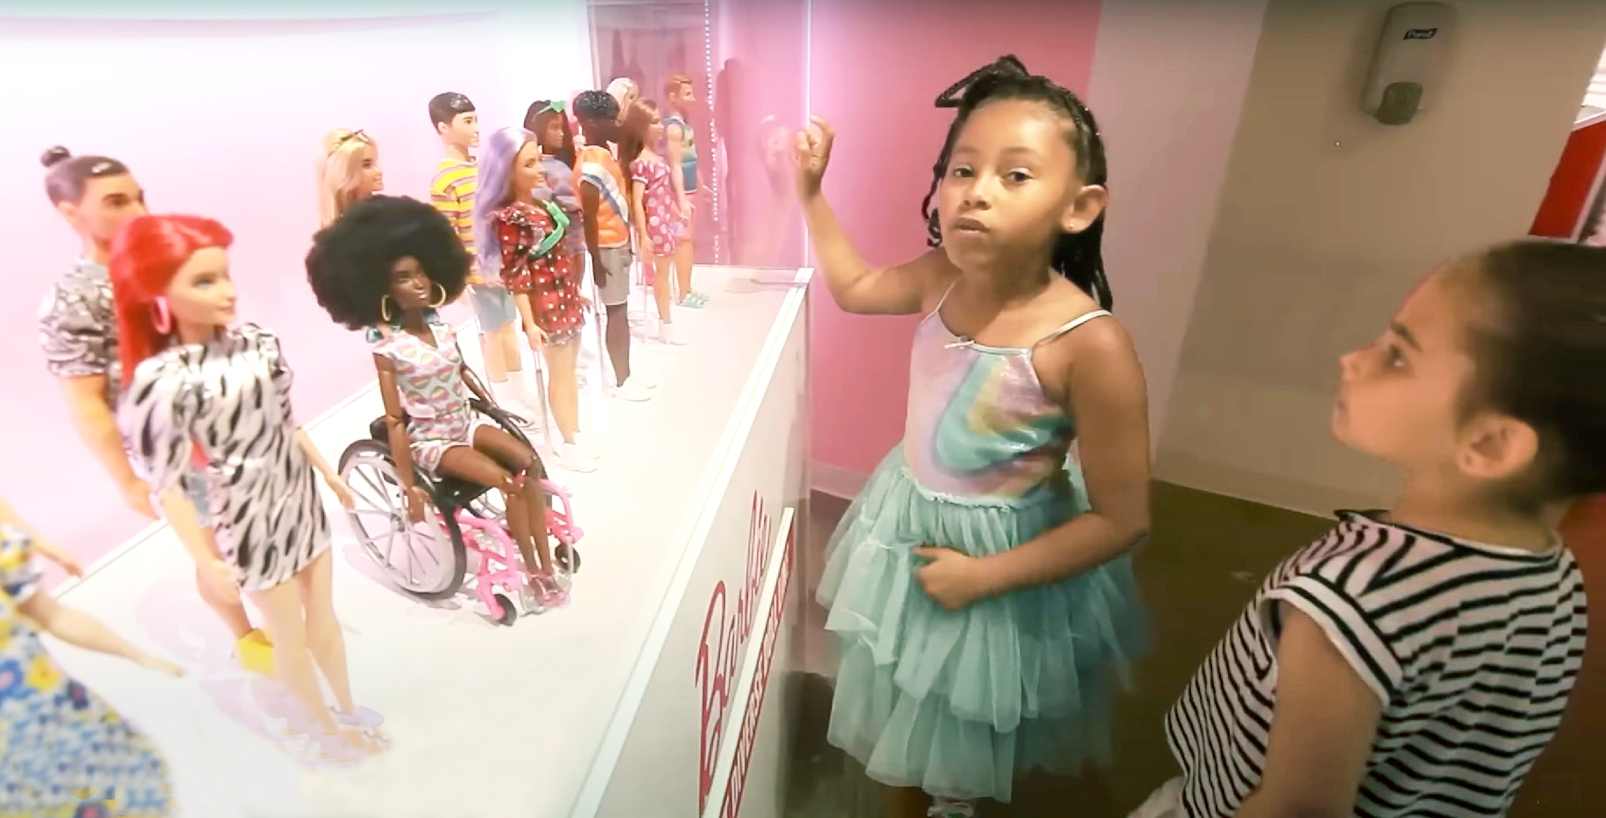 “Triều đại Barbie” đã làm thay đổi cách mà các cô gái nhìn nhận bản thân và vai trò của họ trong xã hội - Nguồn ảnh: CBS News